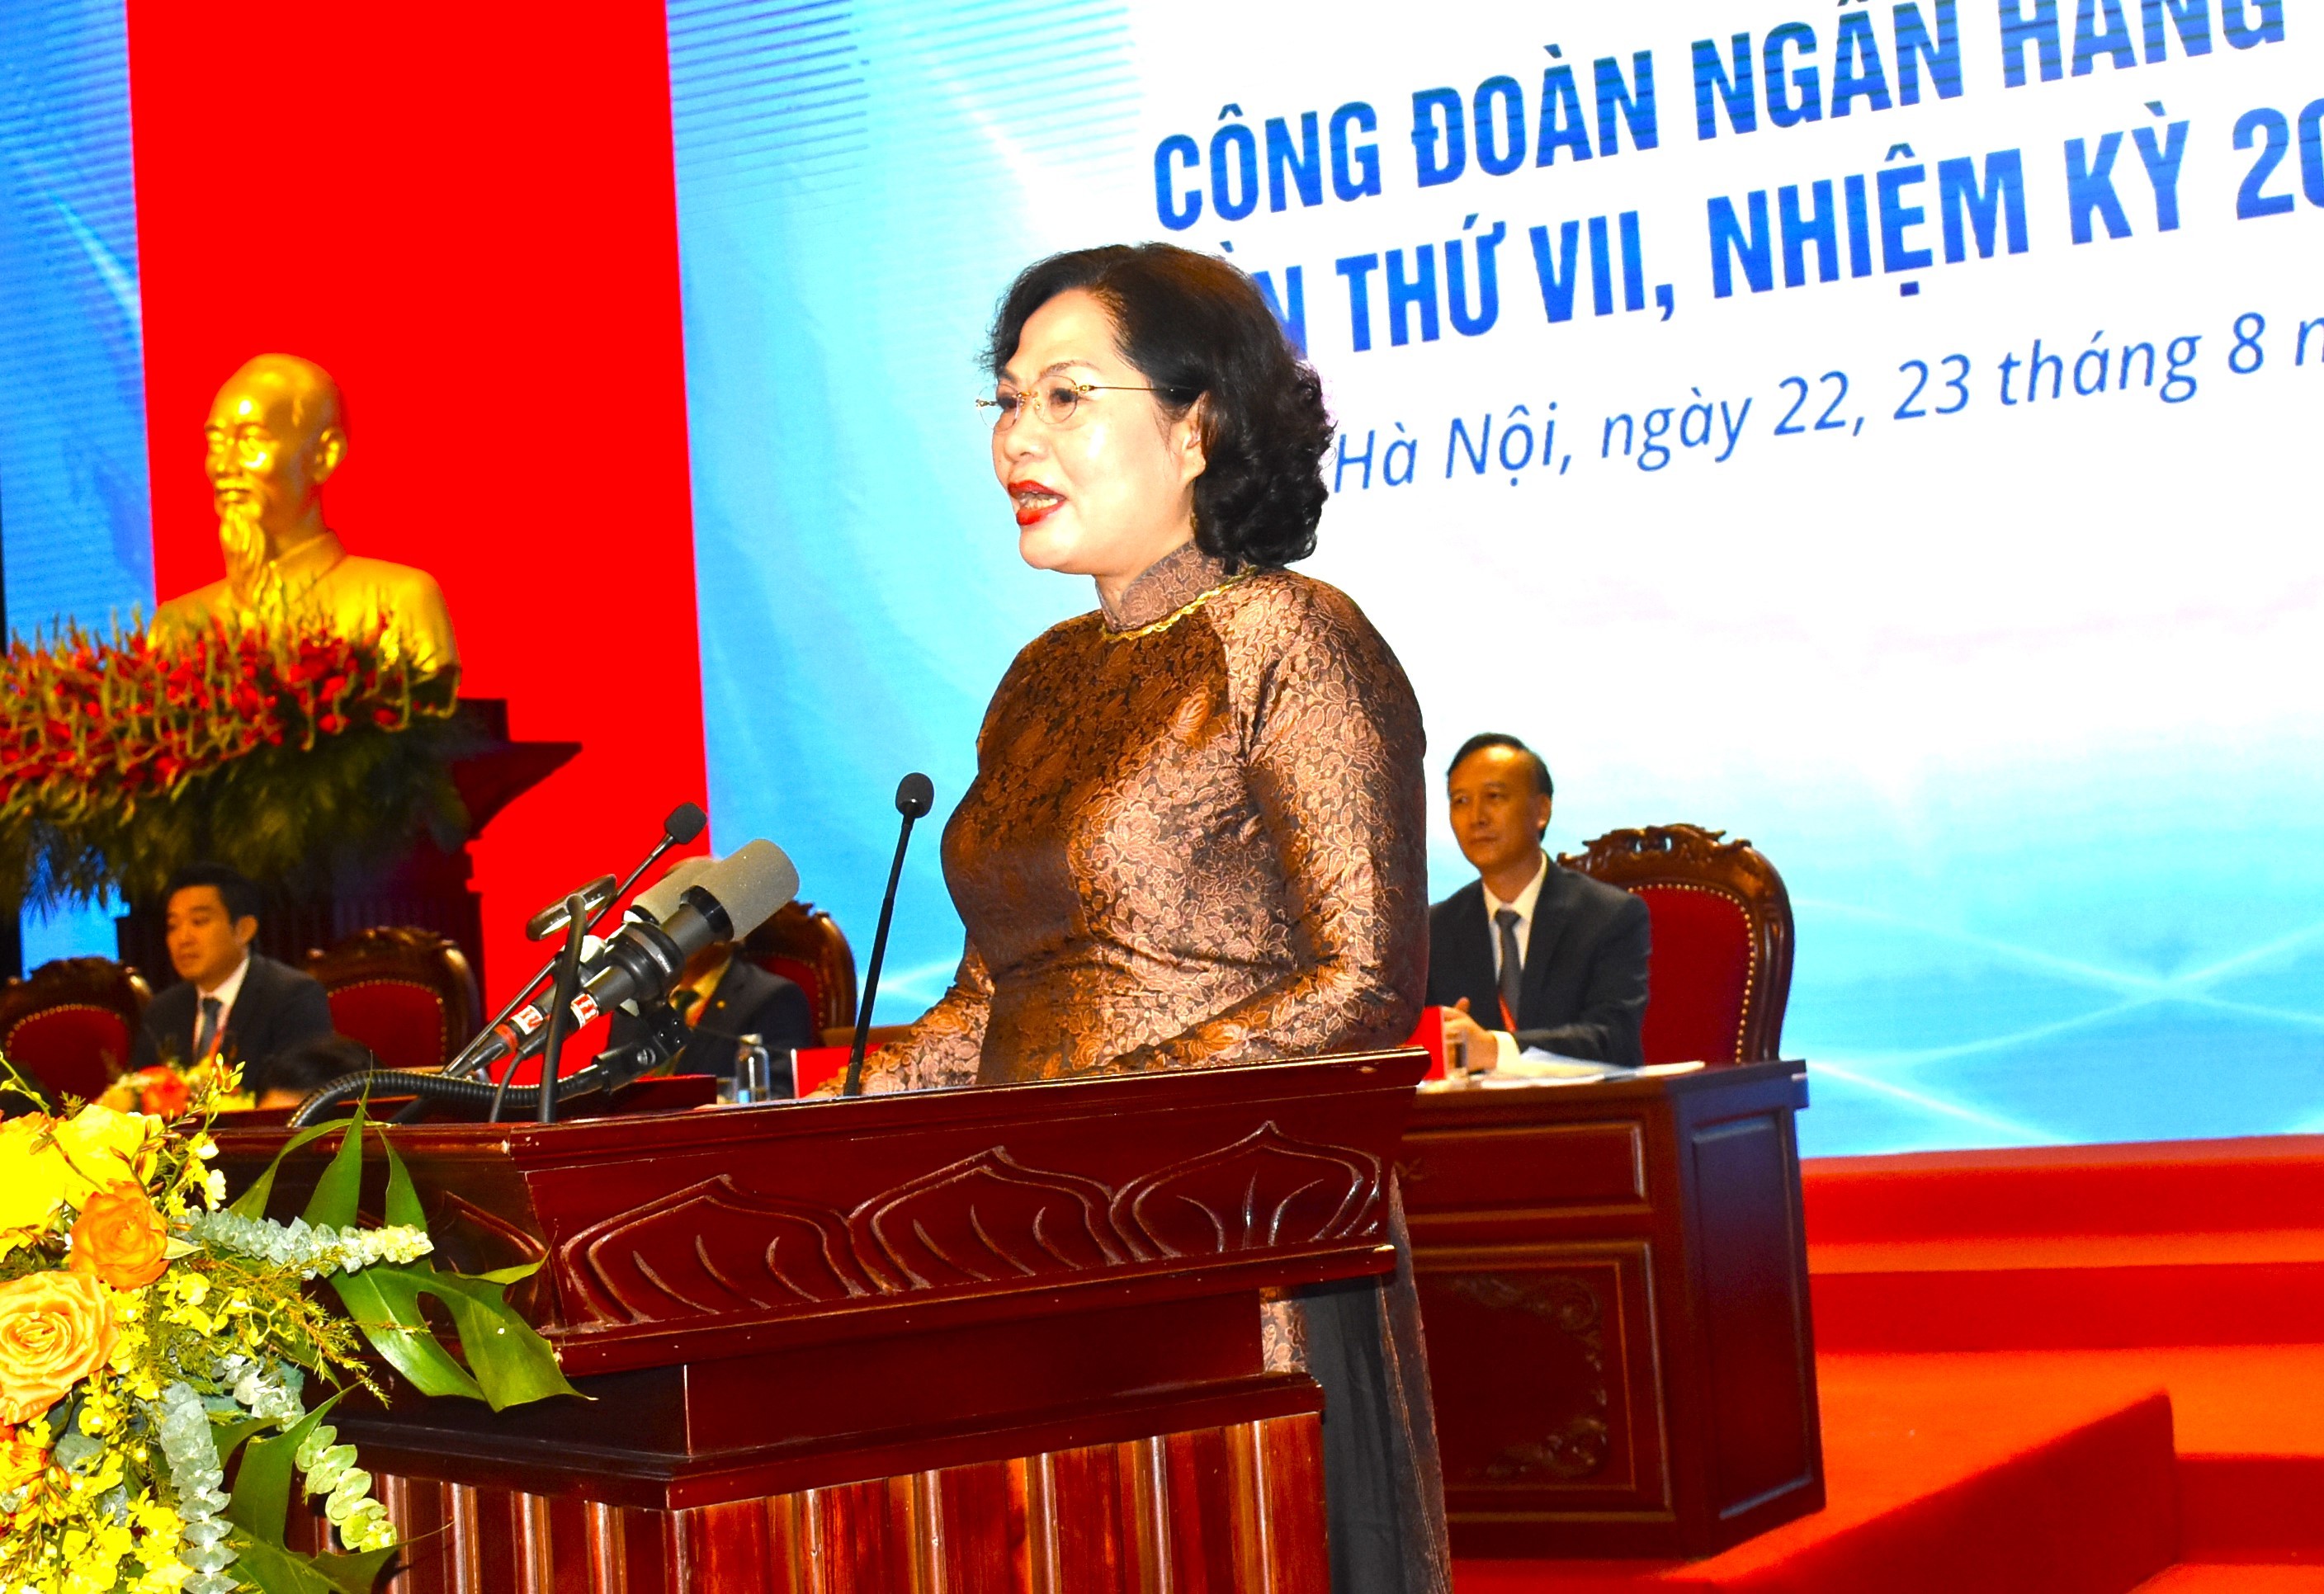 Đại hội Đại biểu Công đoàn Ngân hàng Việt Nam lần thứ VII, nhiệm kỳ 2023 - 2028